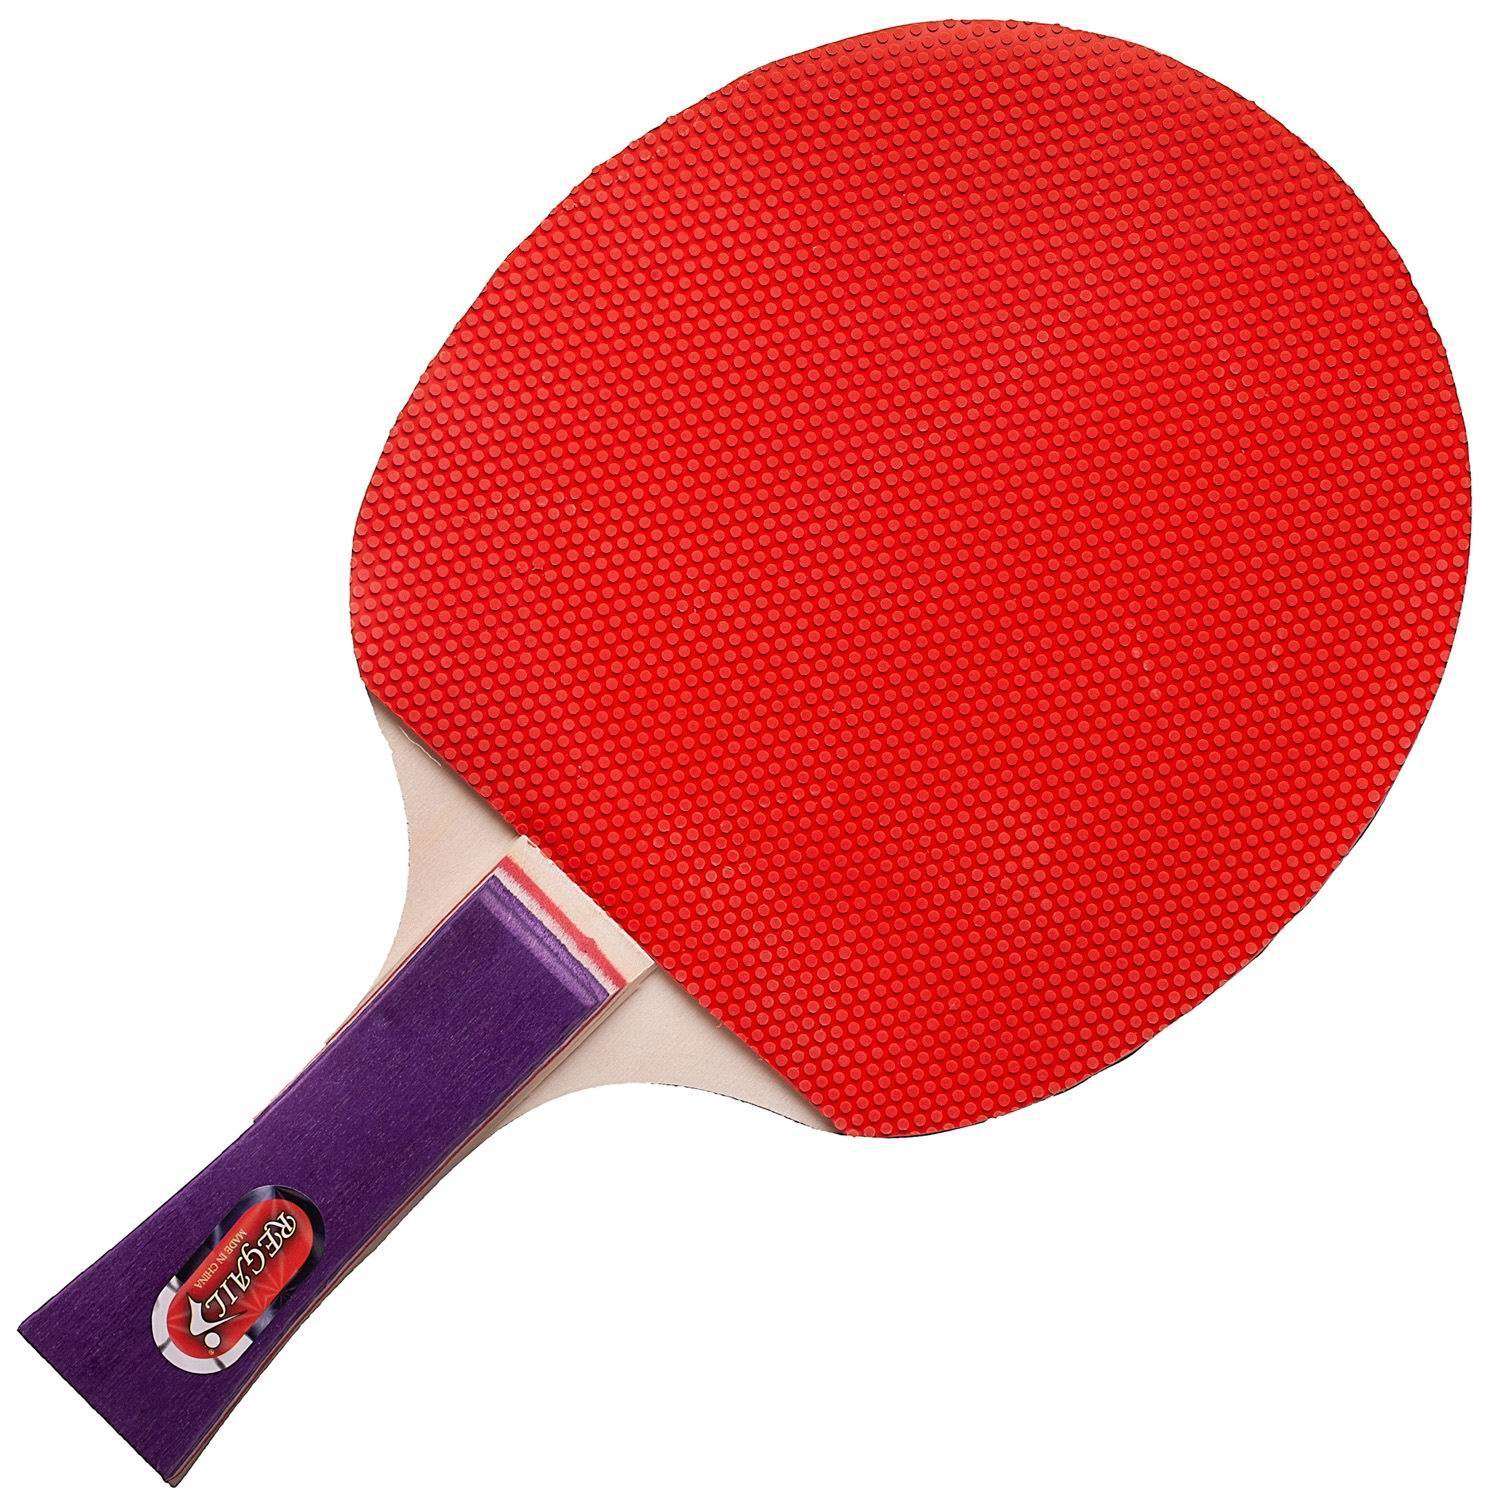 Настольный теннис Junfa Пингпонг 2 ракетки 3 шарика - фото 3